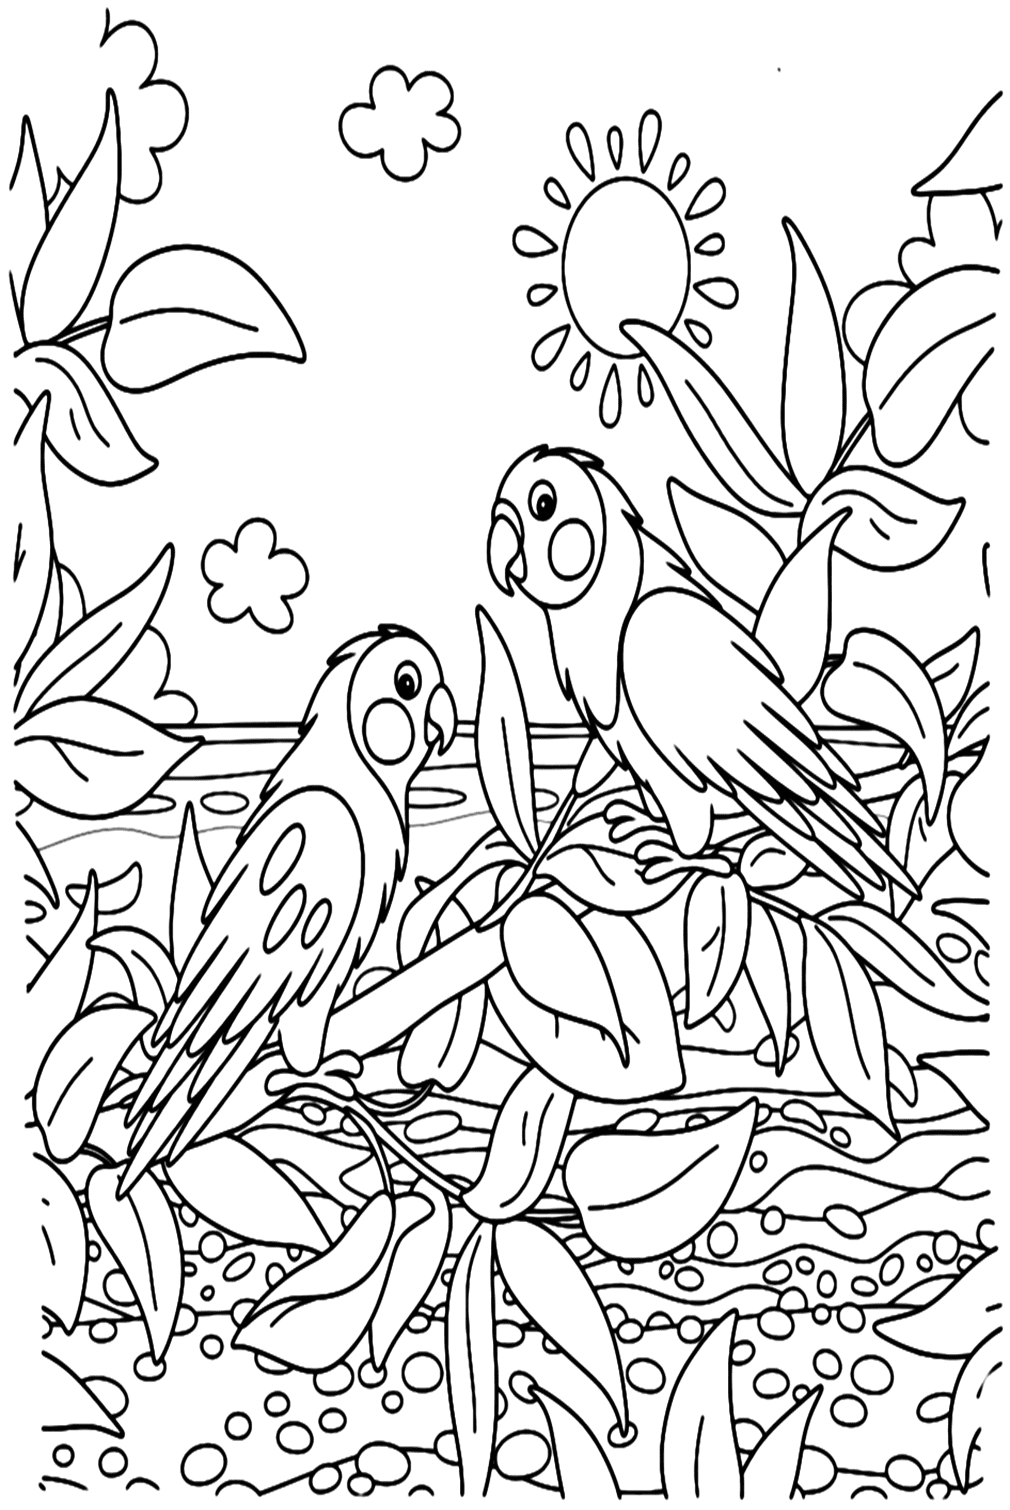 Забавная раскраска Попугай от Parakeet